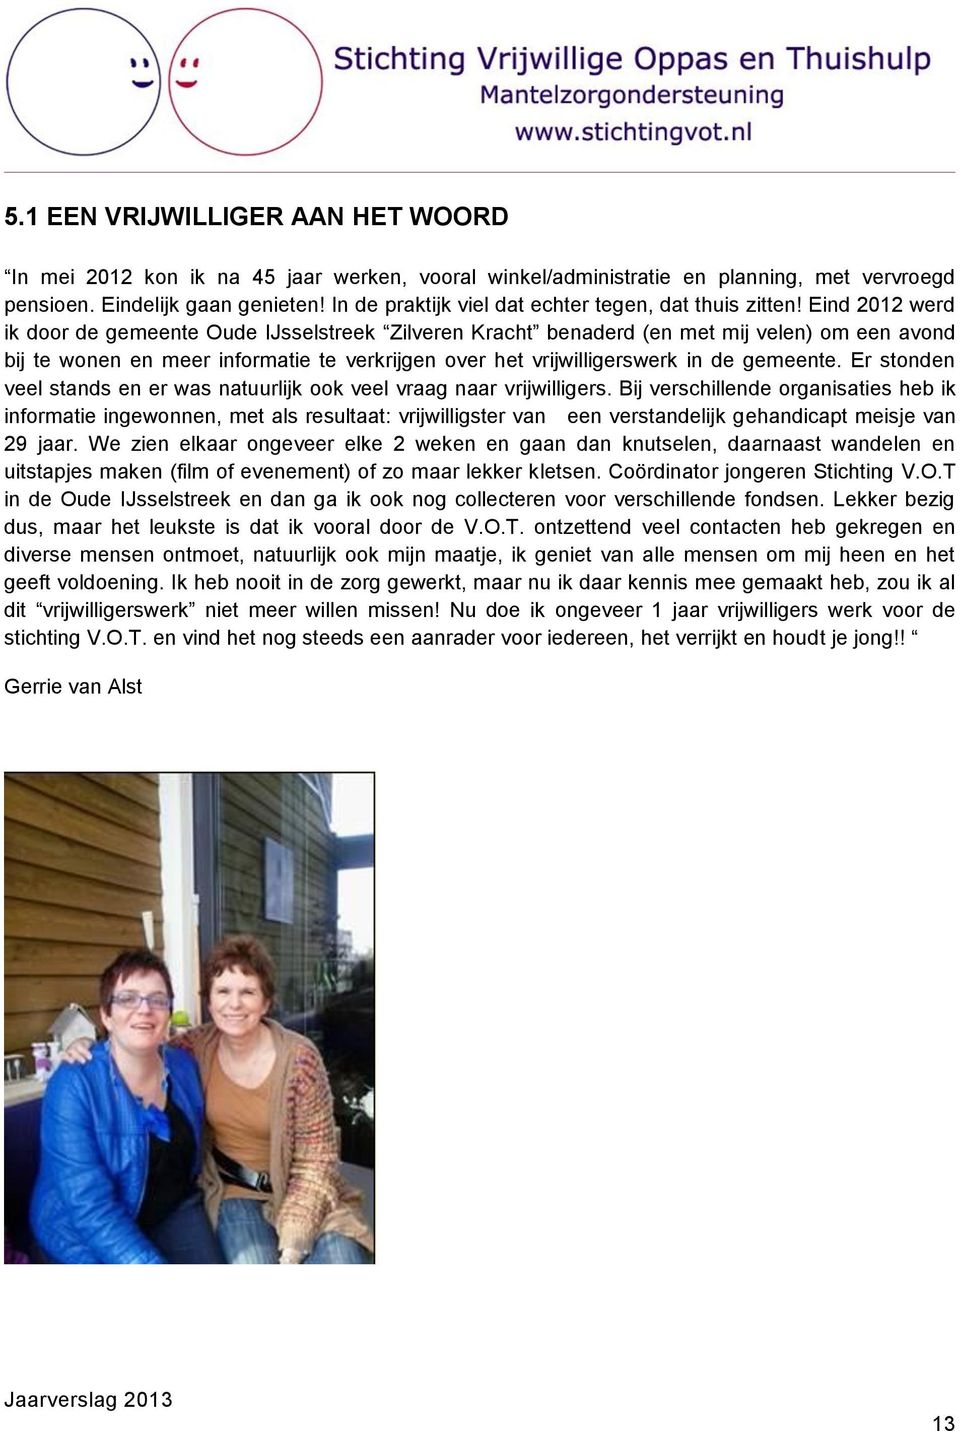 Eind 2012 werd ik door de gemeente Oude IJsselstreek Zilveren Kracht benaderd (en met mij velen) om een avond bij te wonen en meer informatie te verkrijgen over het vrijwilligerswerk in de gemeente.